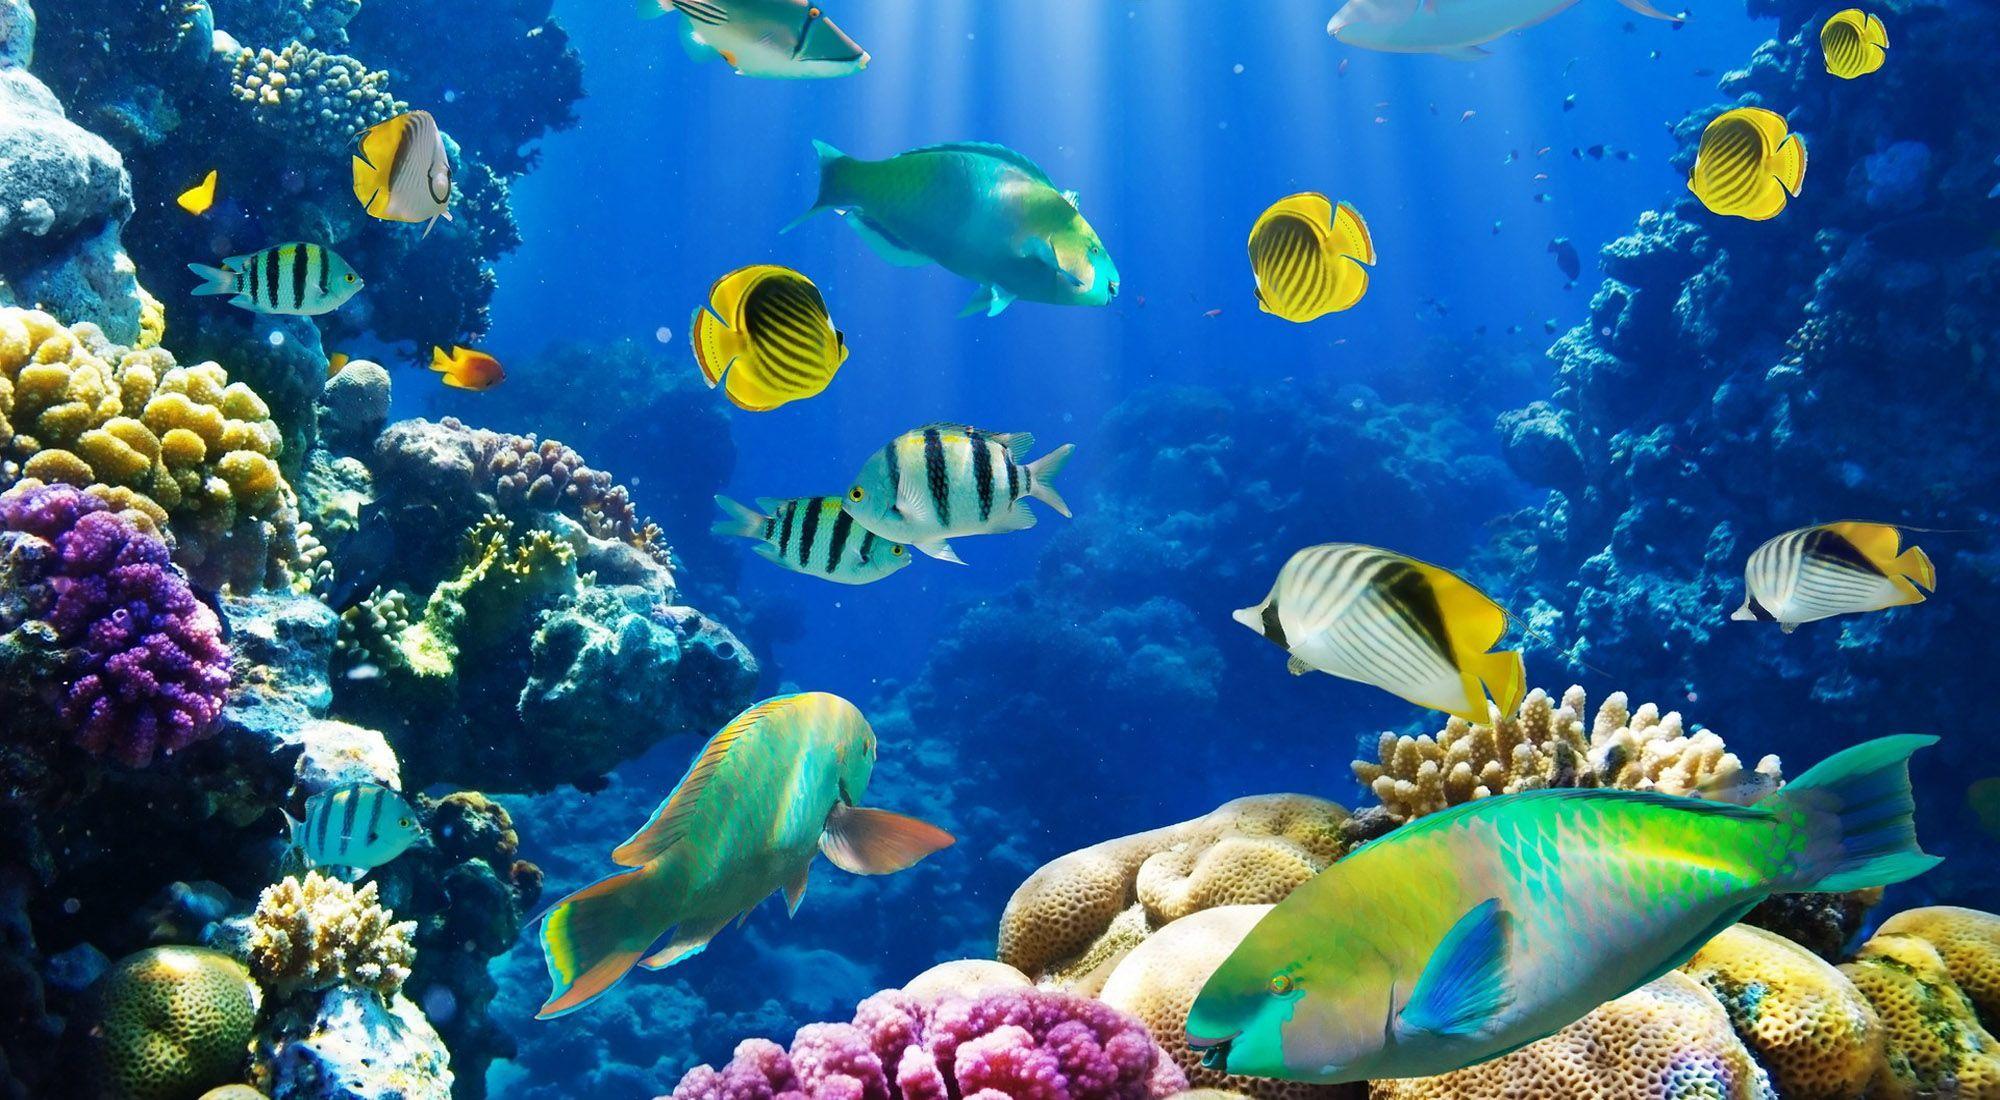 HD Fish Wallpaper: Find best latest HD Fish Wallpaper in HD